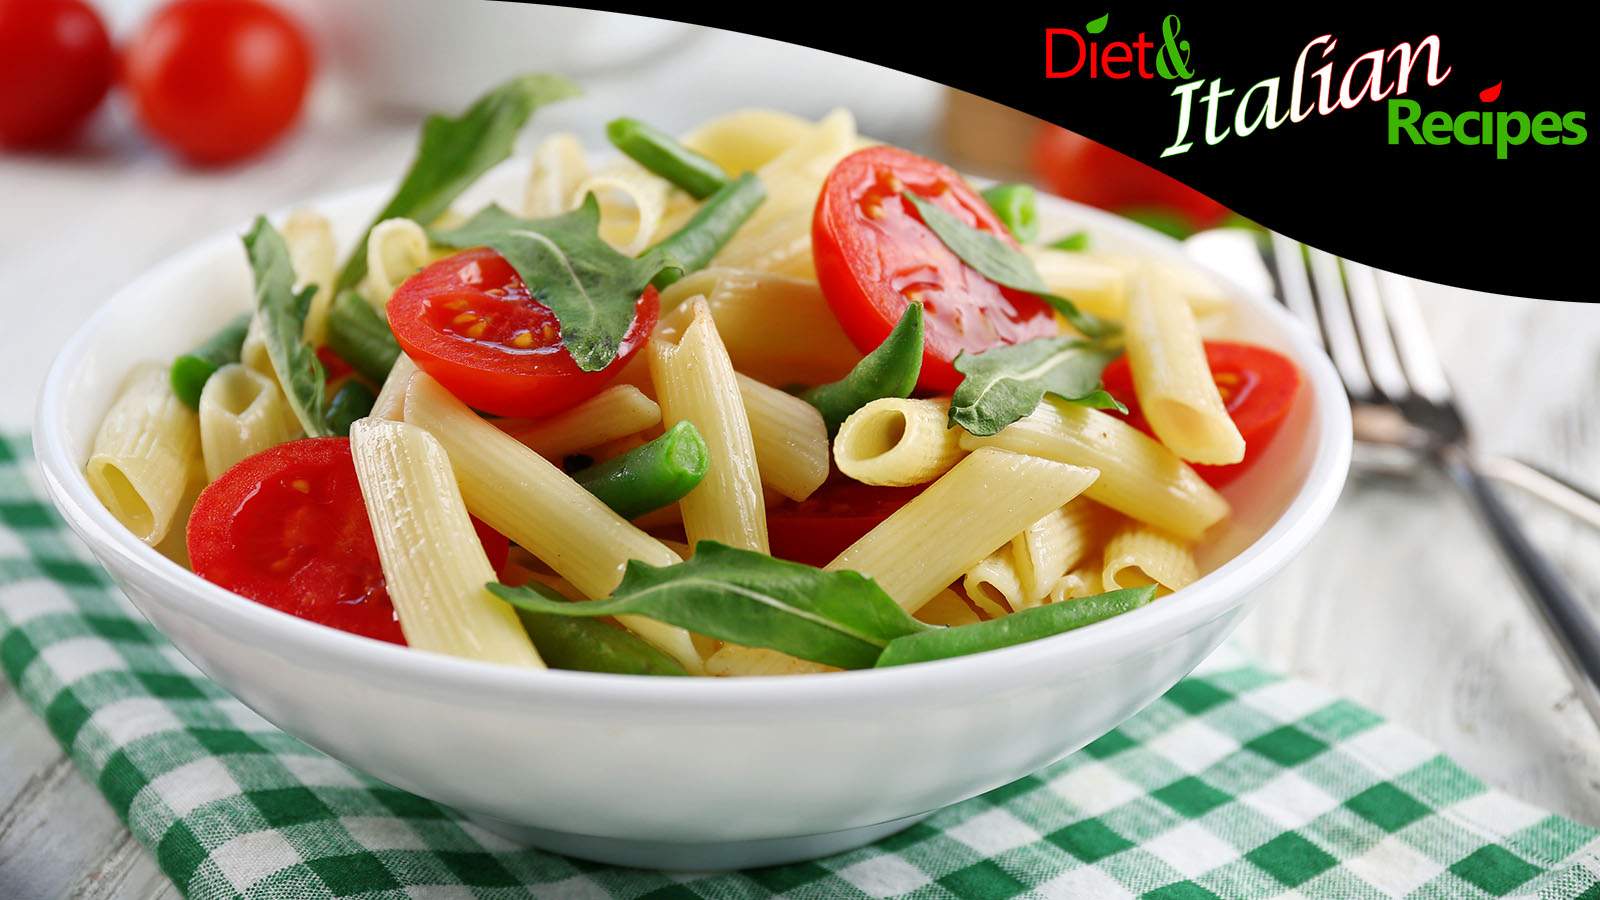 healthy italian recipes